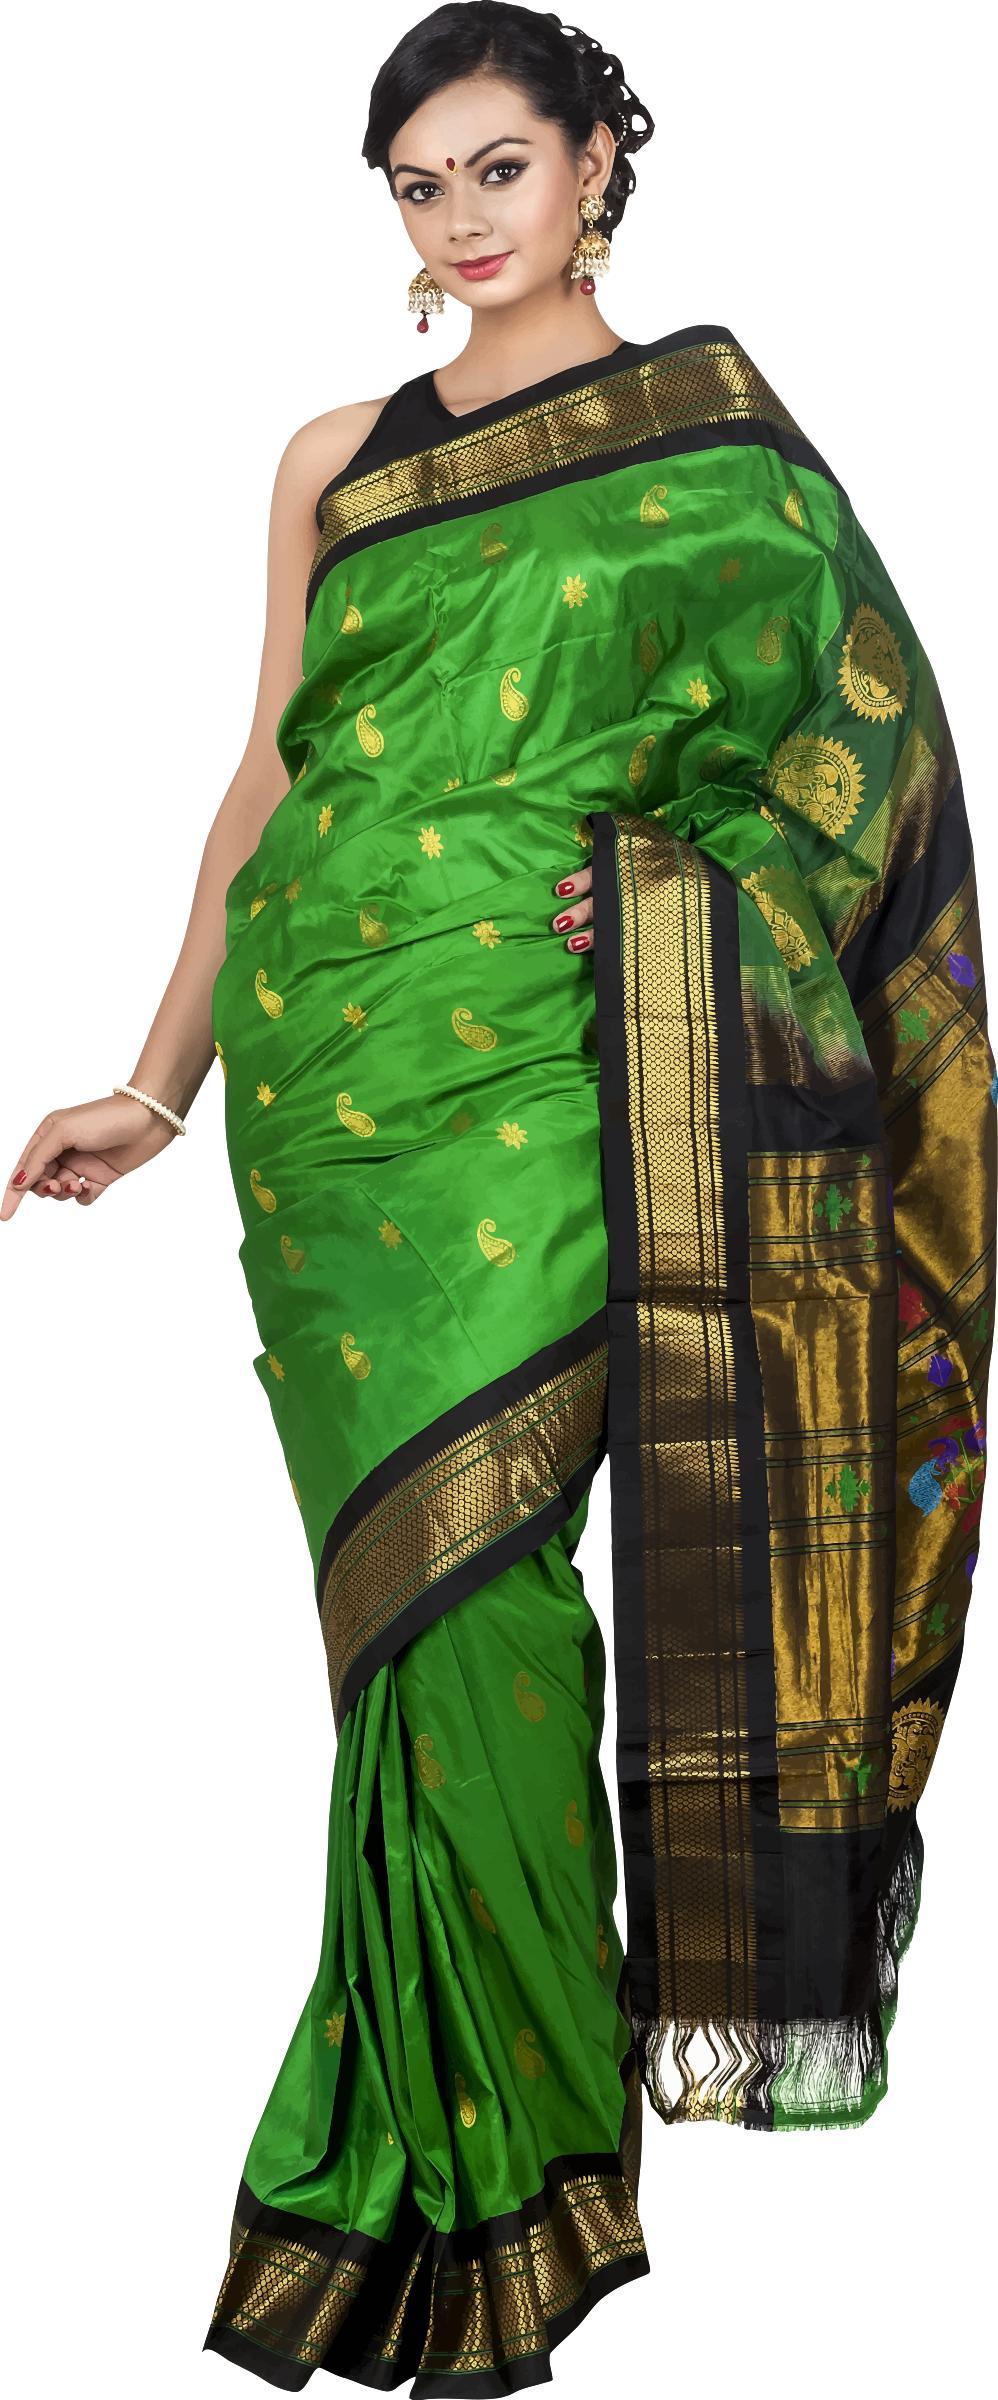 Woman in saree png transparent